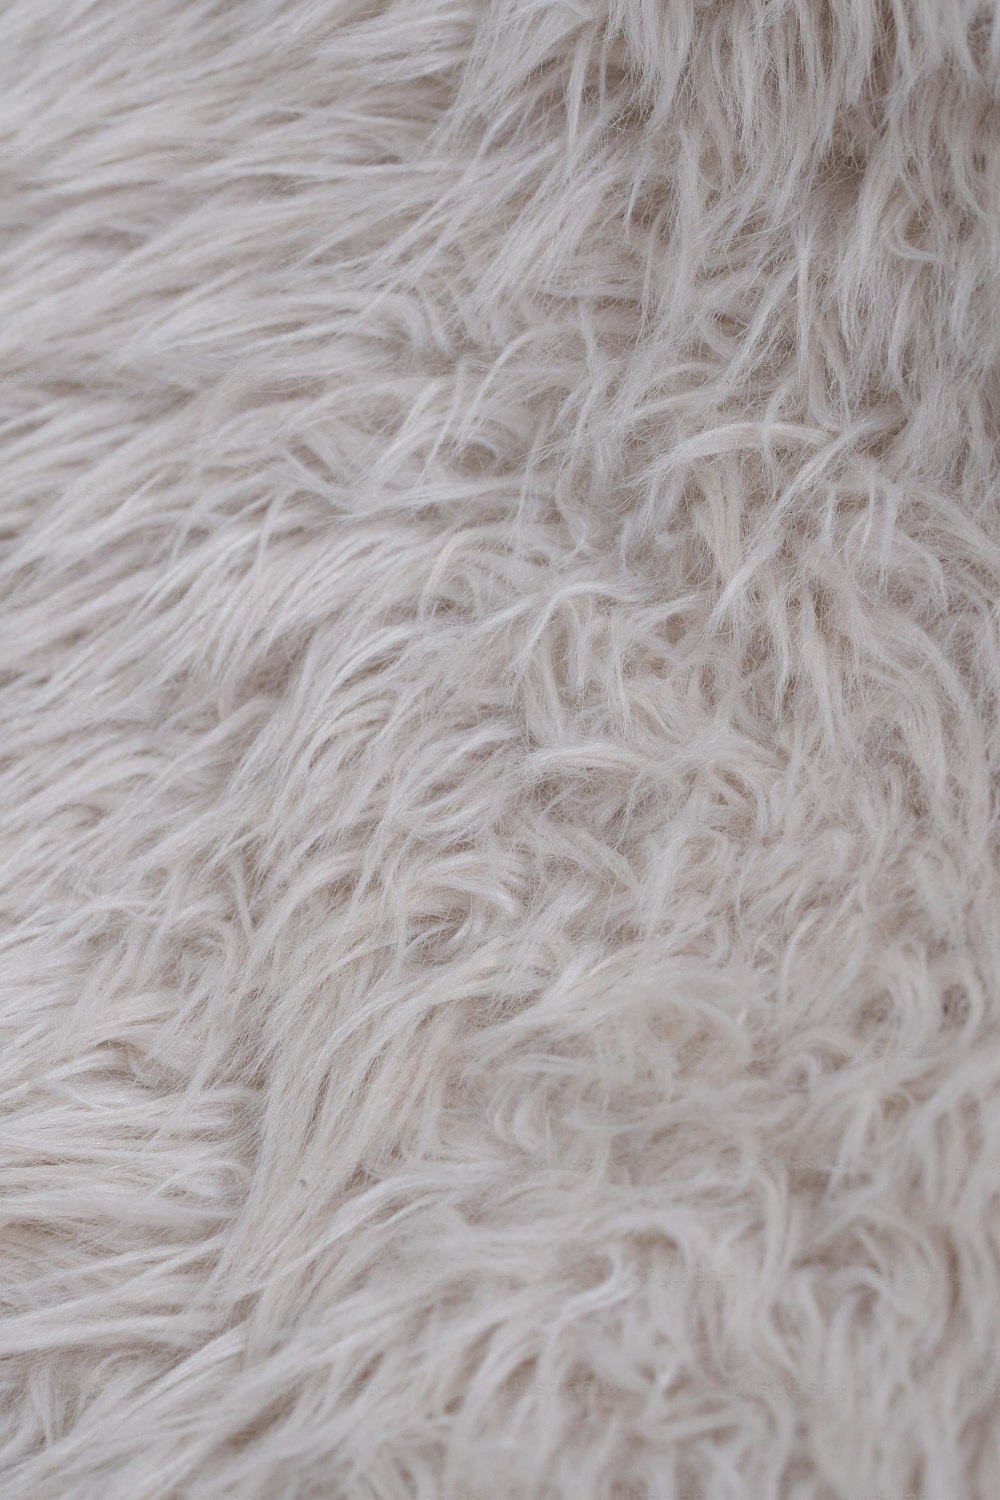 un primer plano de una textura de pelaje blanco